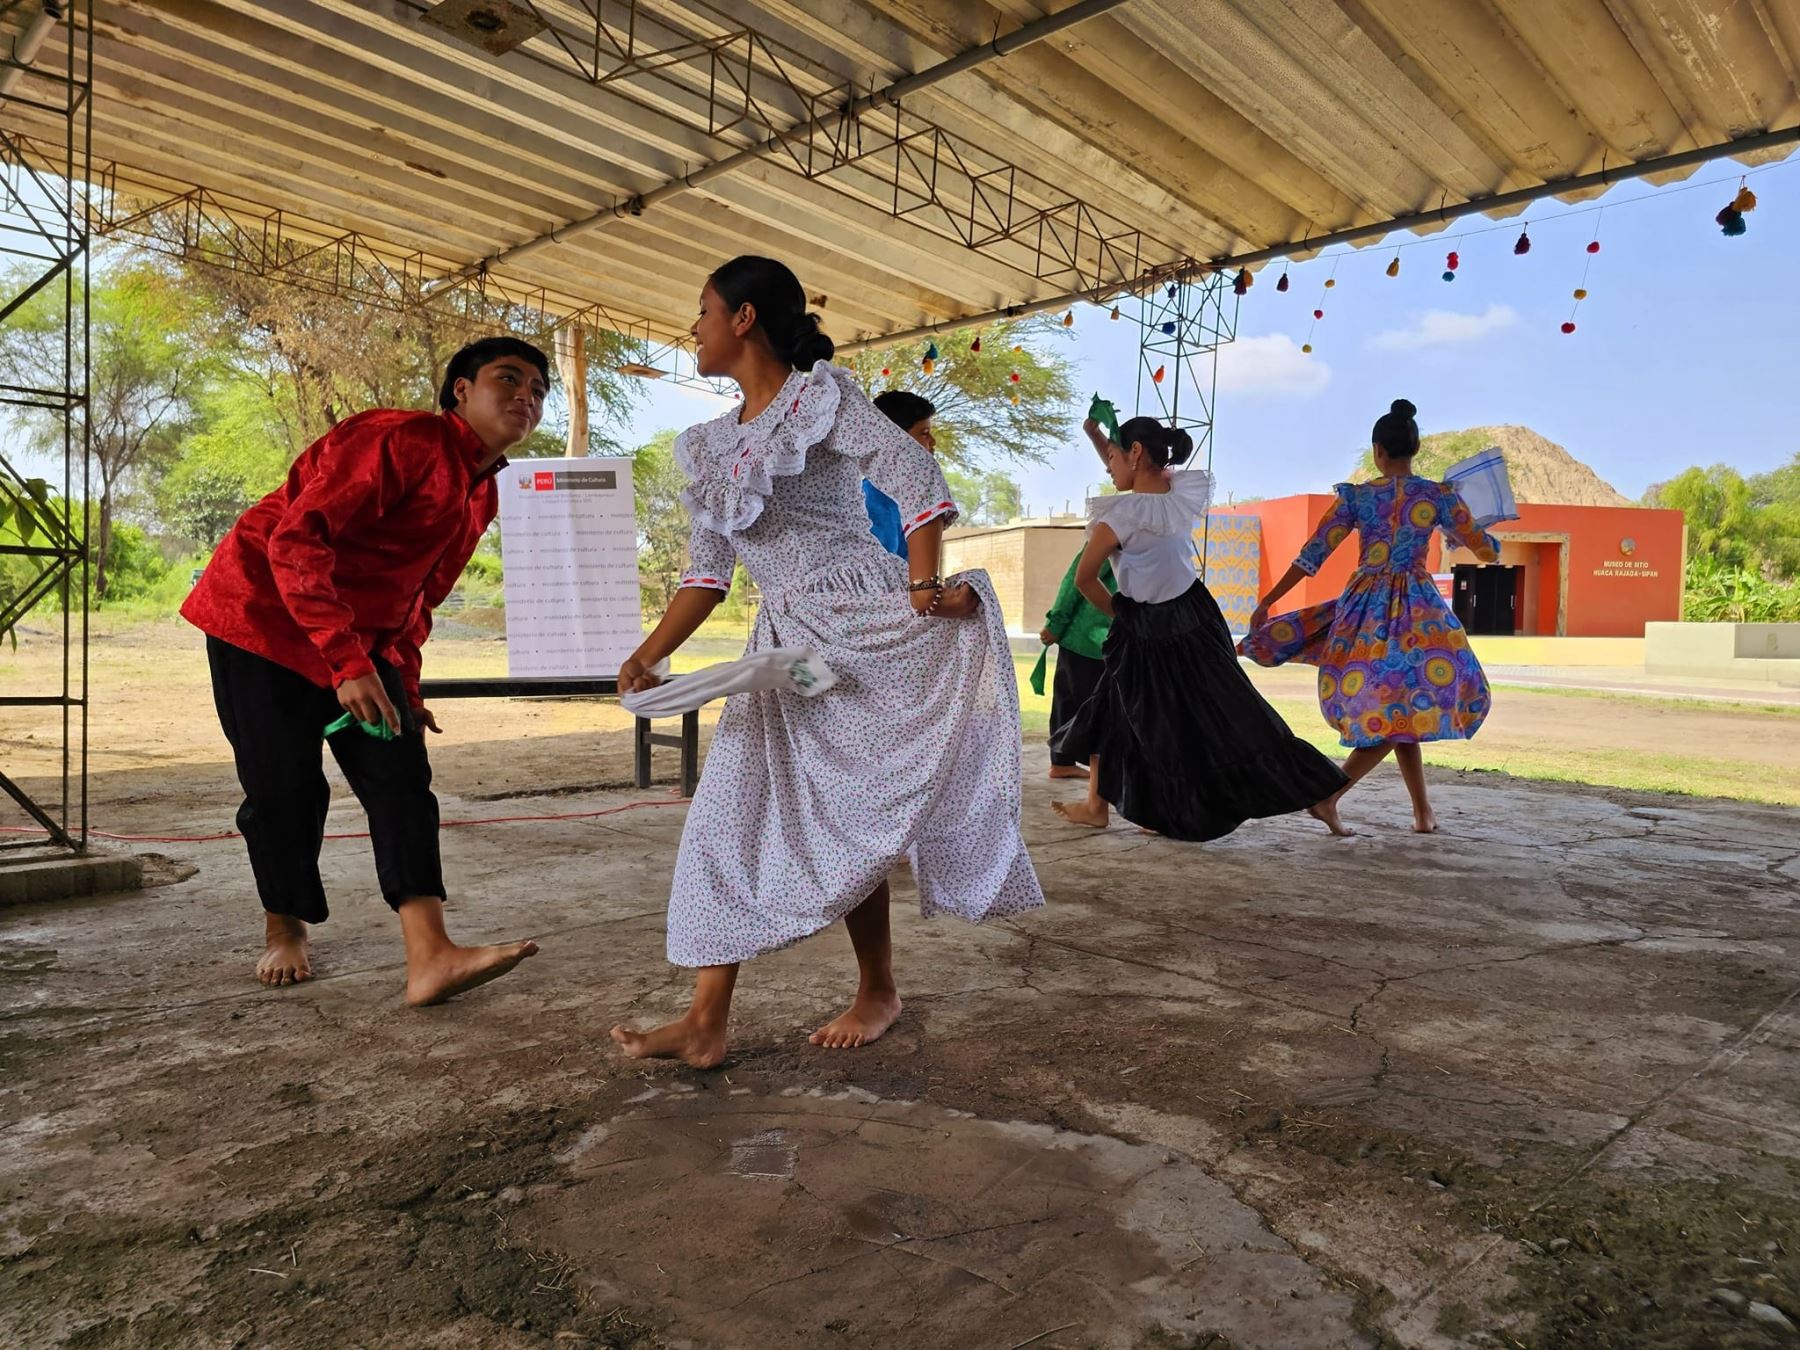 Lambayeque ofrece una variada oferta cultural y una diversidad de ferias regionales durante este feriado largo por Fiestas Patrias y por ello espera la visita de más de 270,000 turistas. ANDINA/Difusión